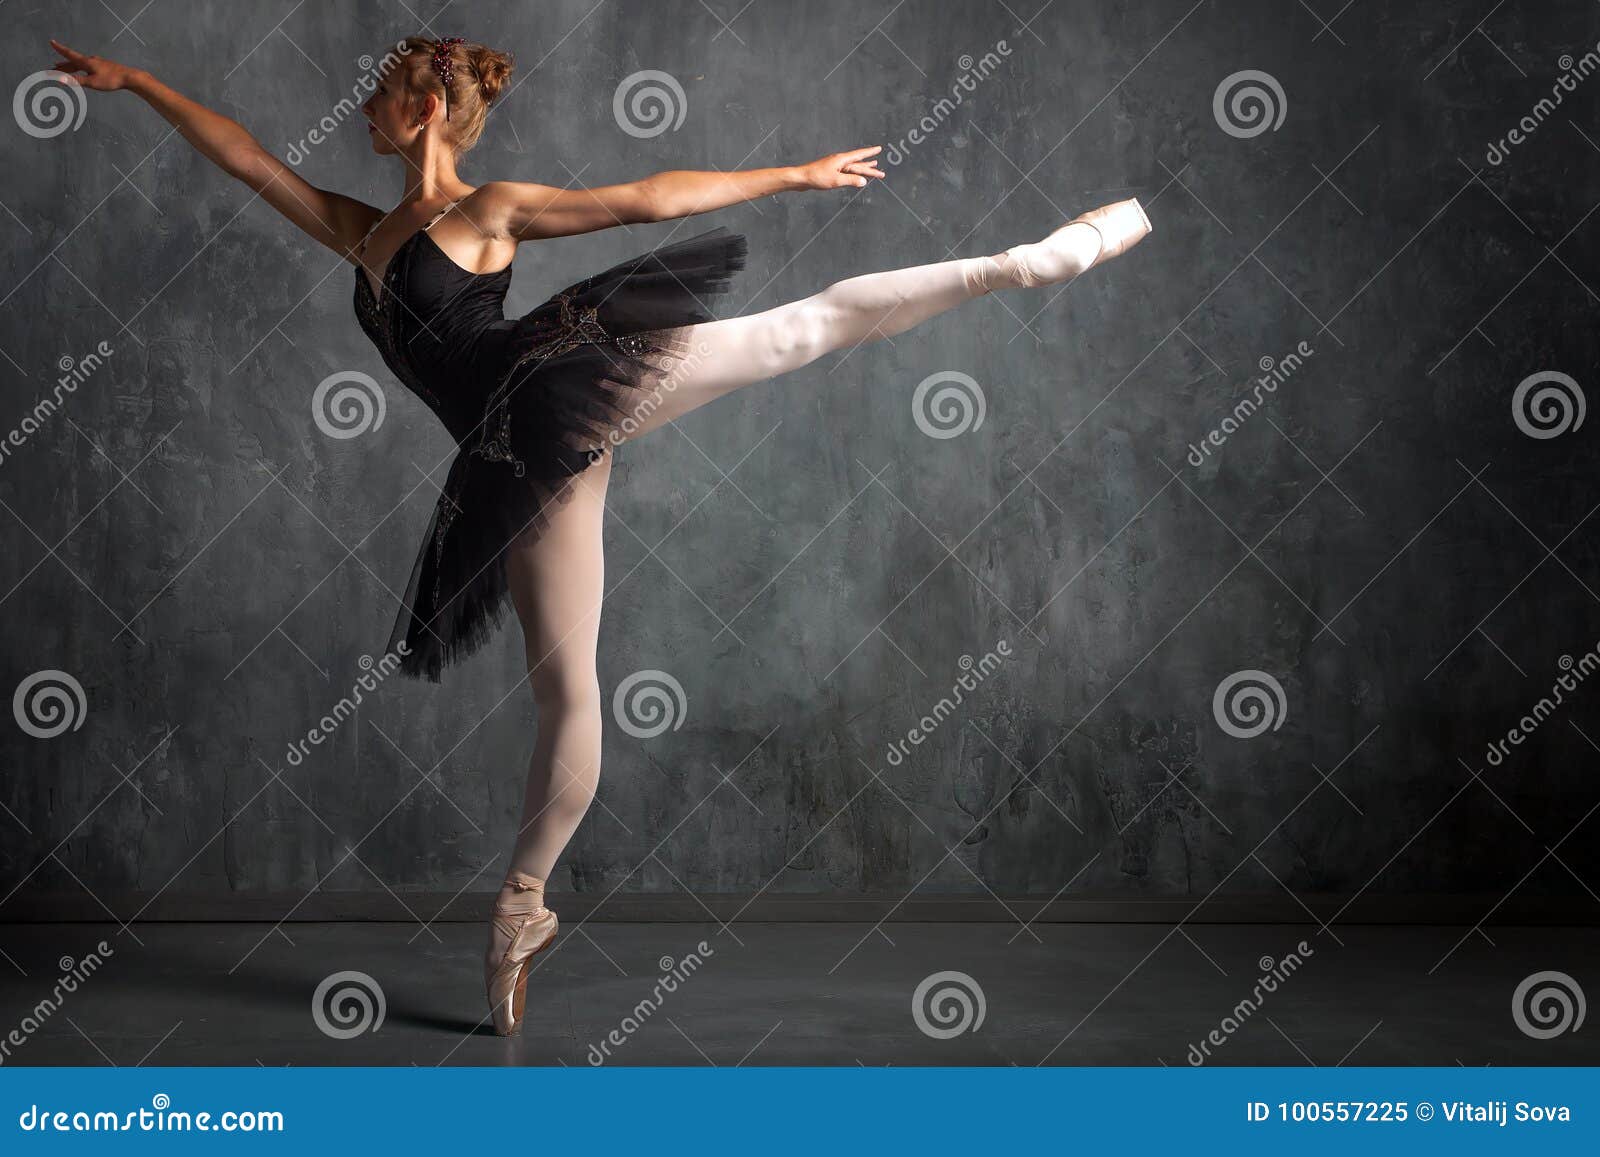 woman primer ballerina